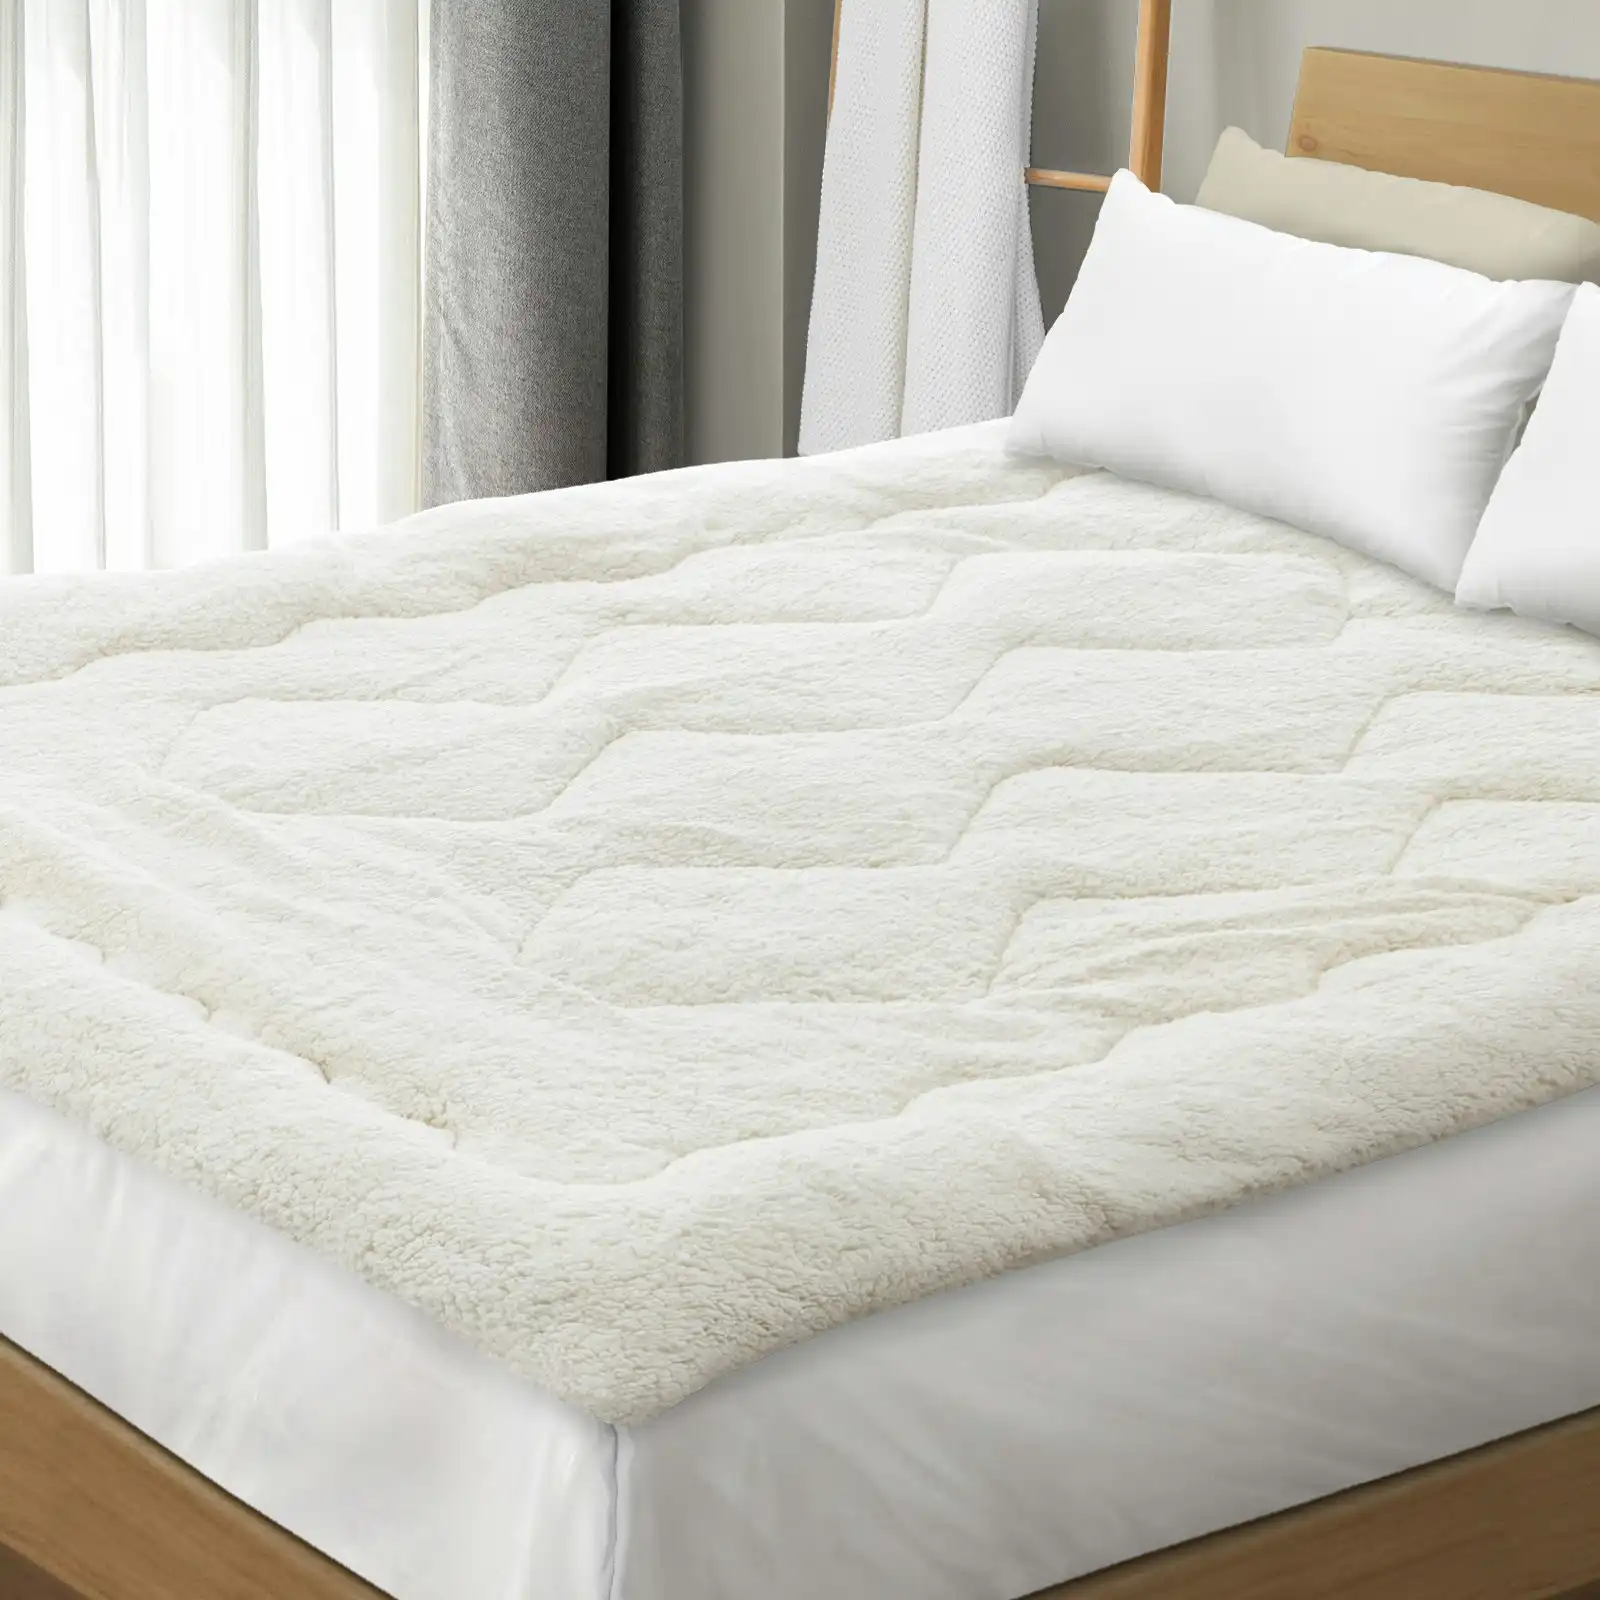 Bedra Pillowtop Mattress Topper King Single Sherpa Fleece Cover